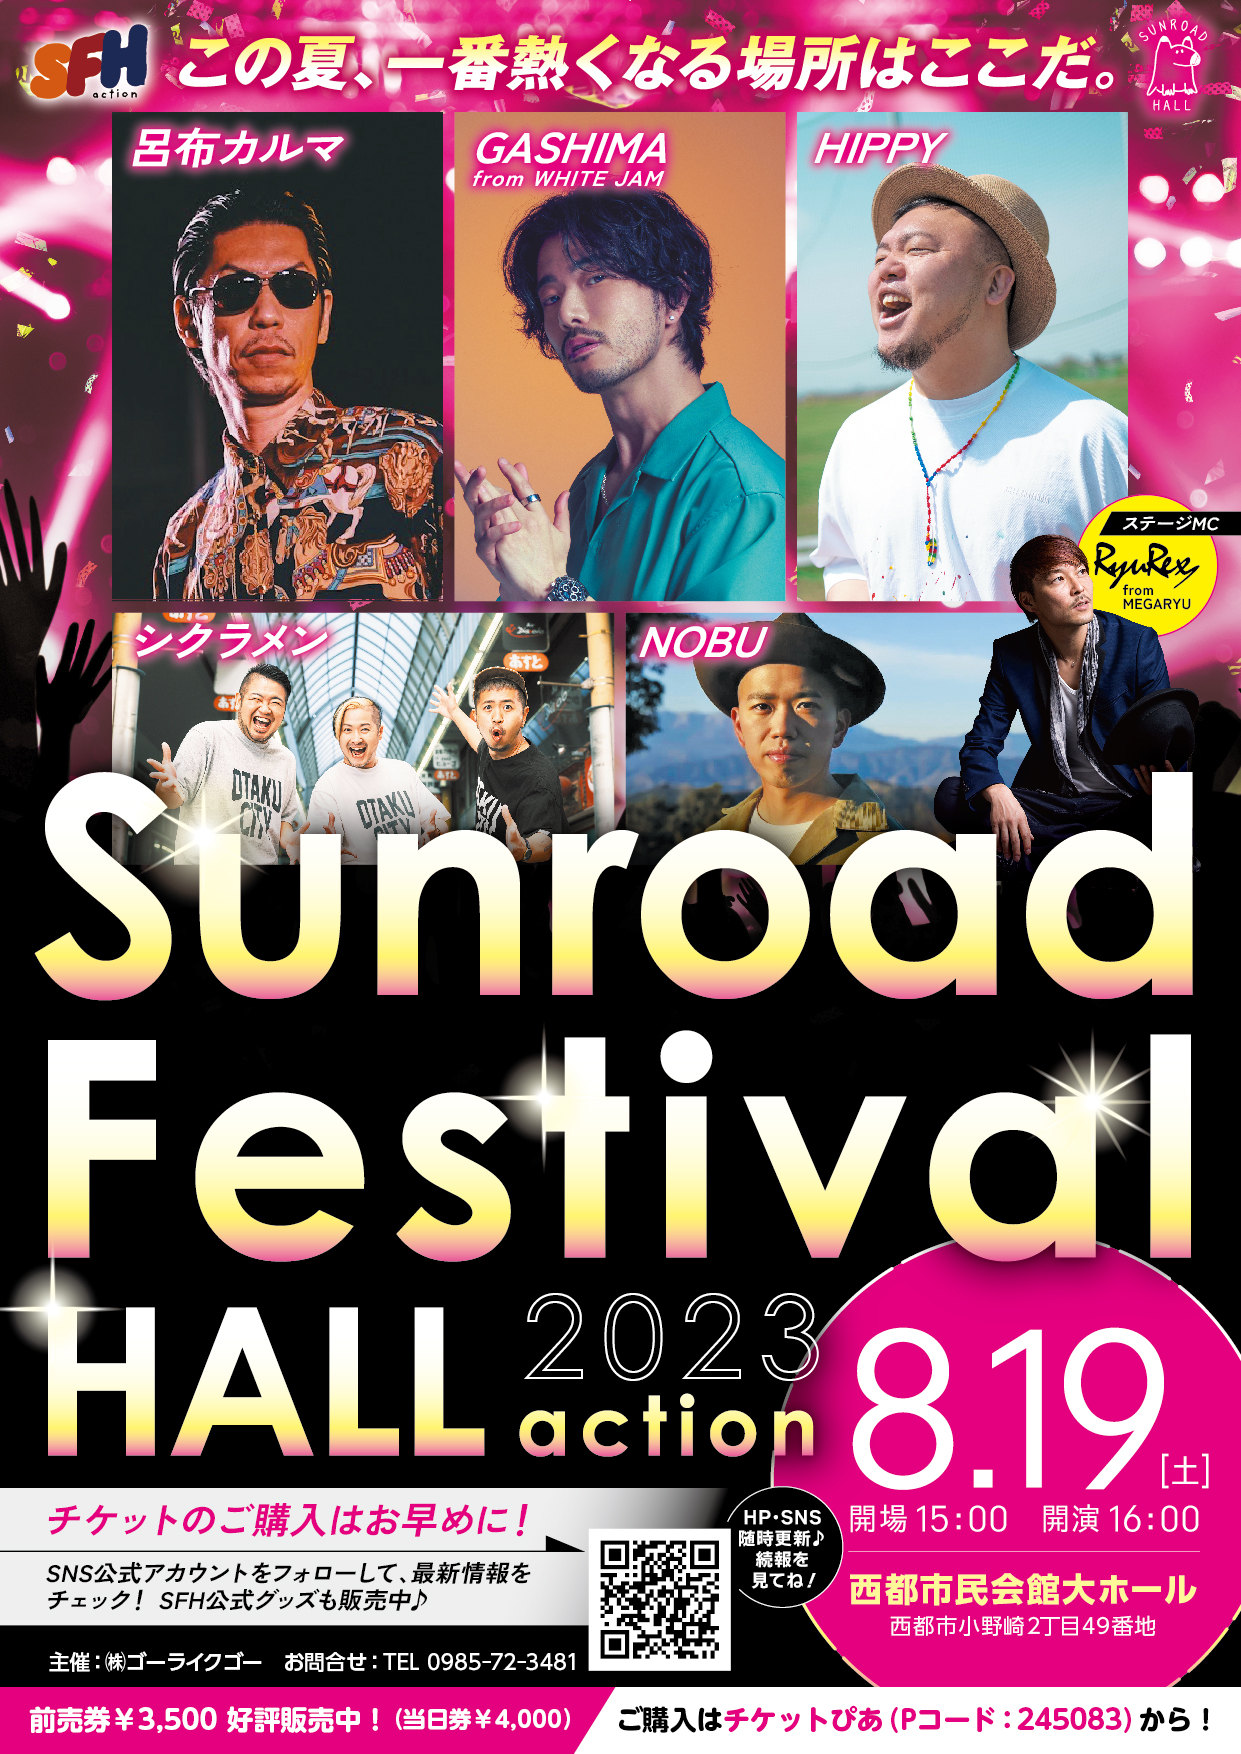 【貸館情報】Sunroad　Festival　Hall　2023action